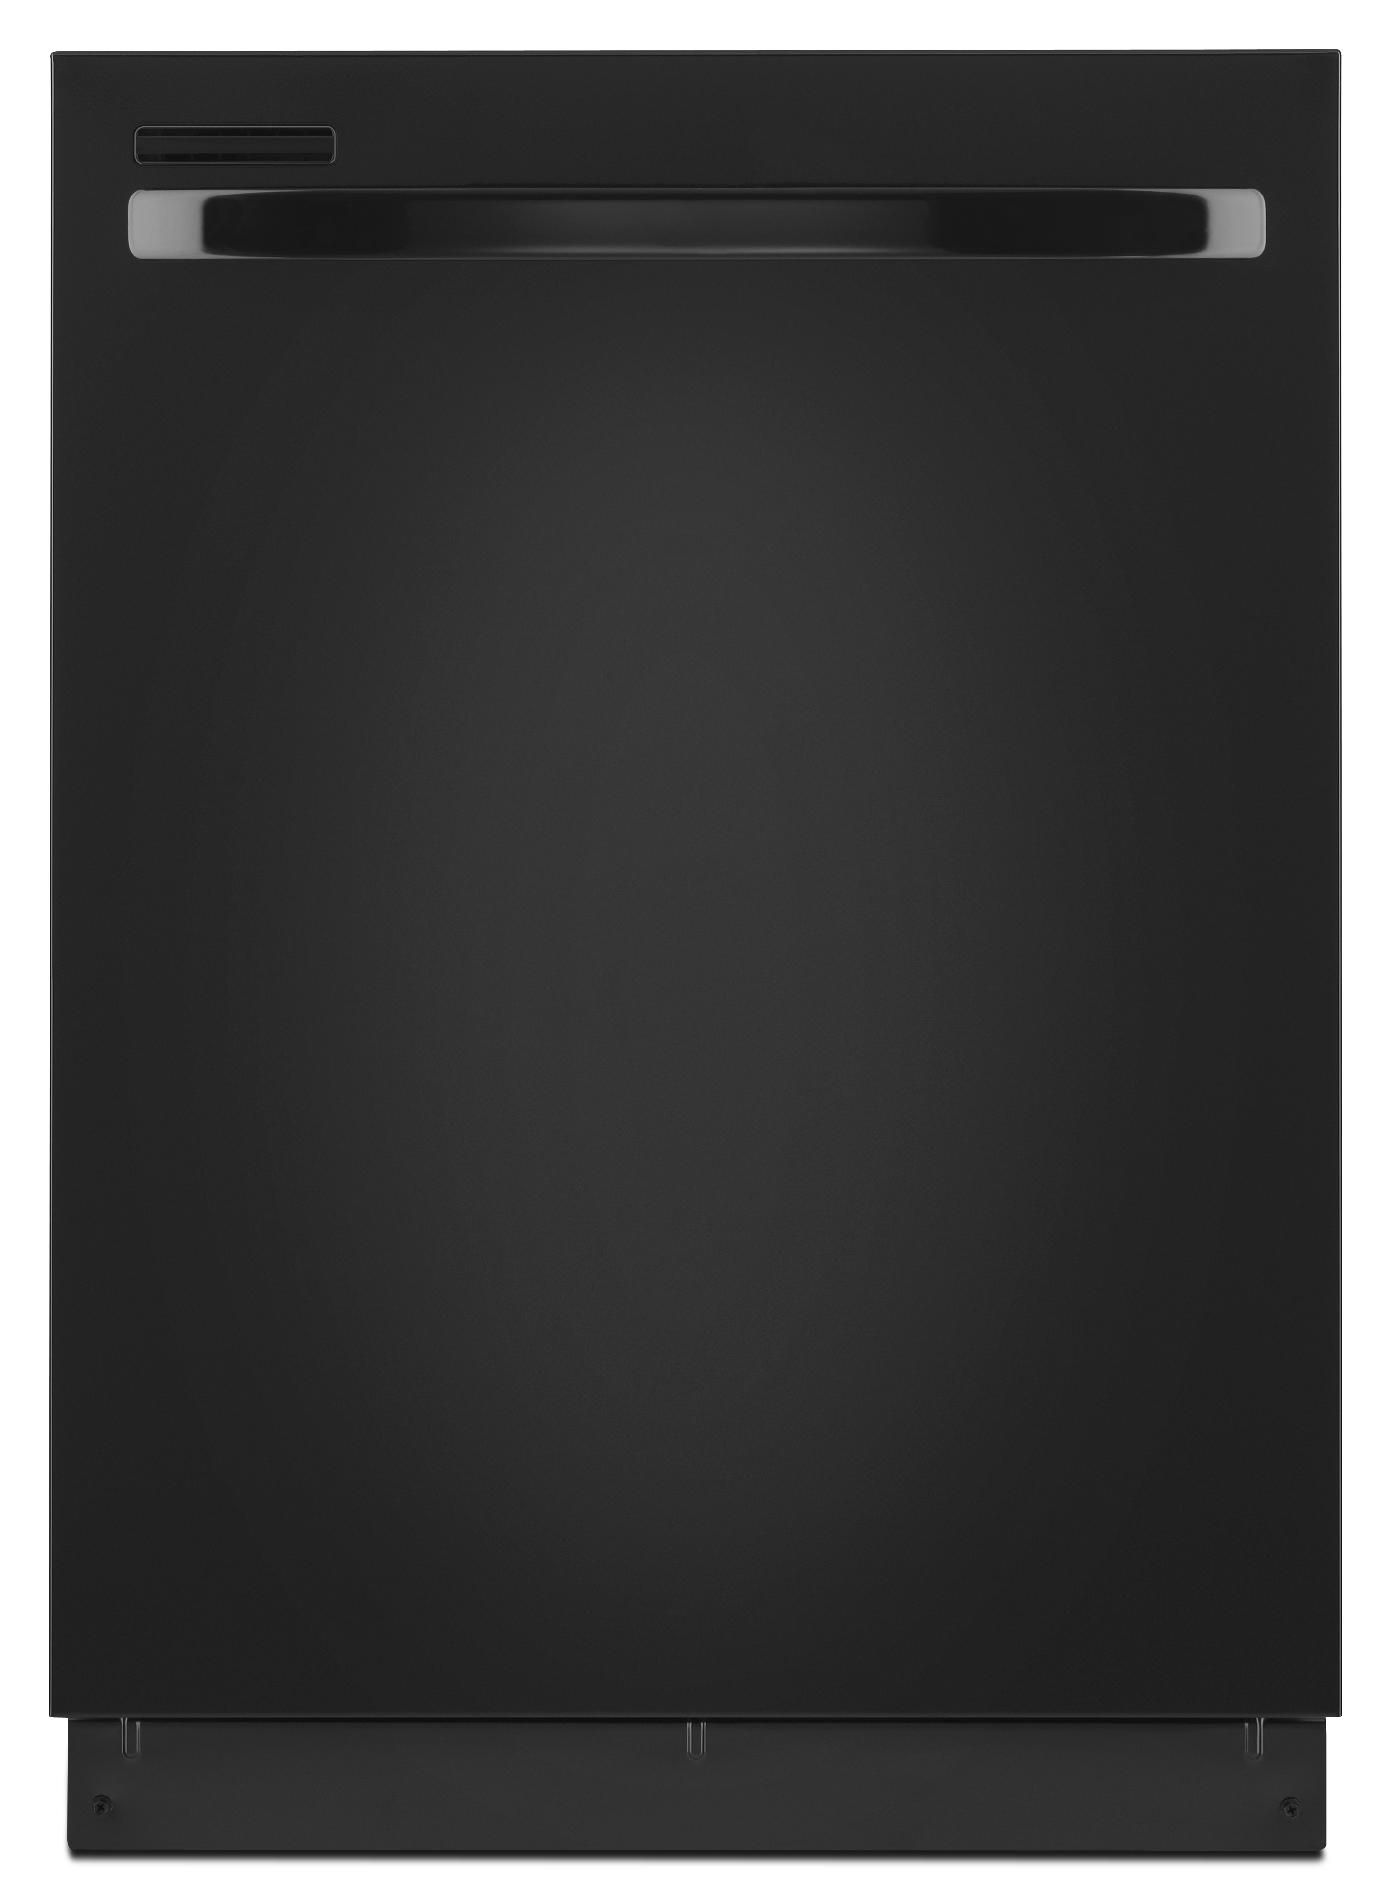 Undercounter Dishwasher logo